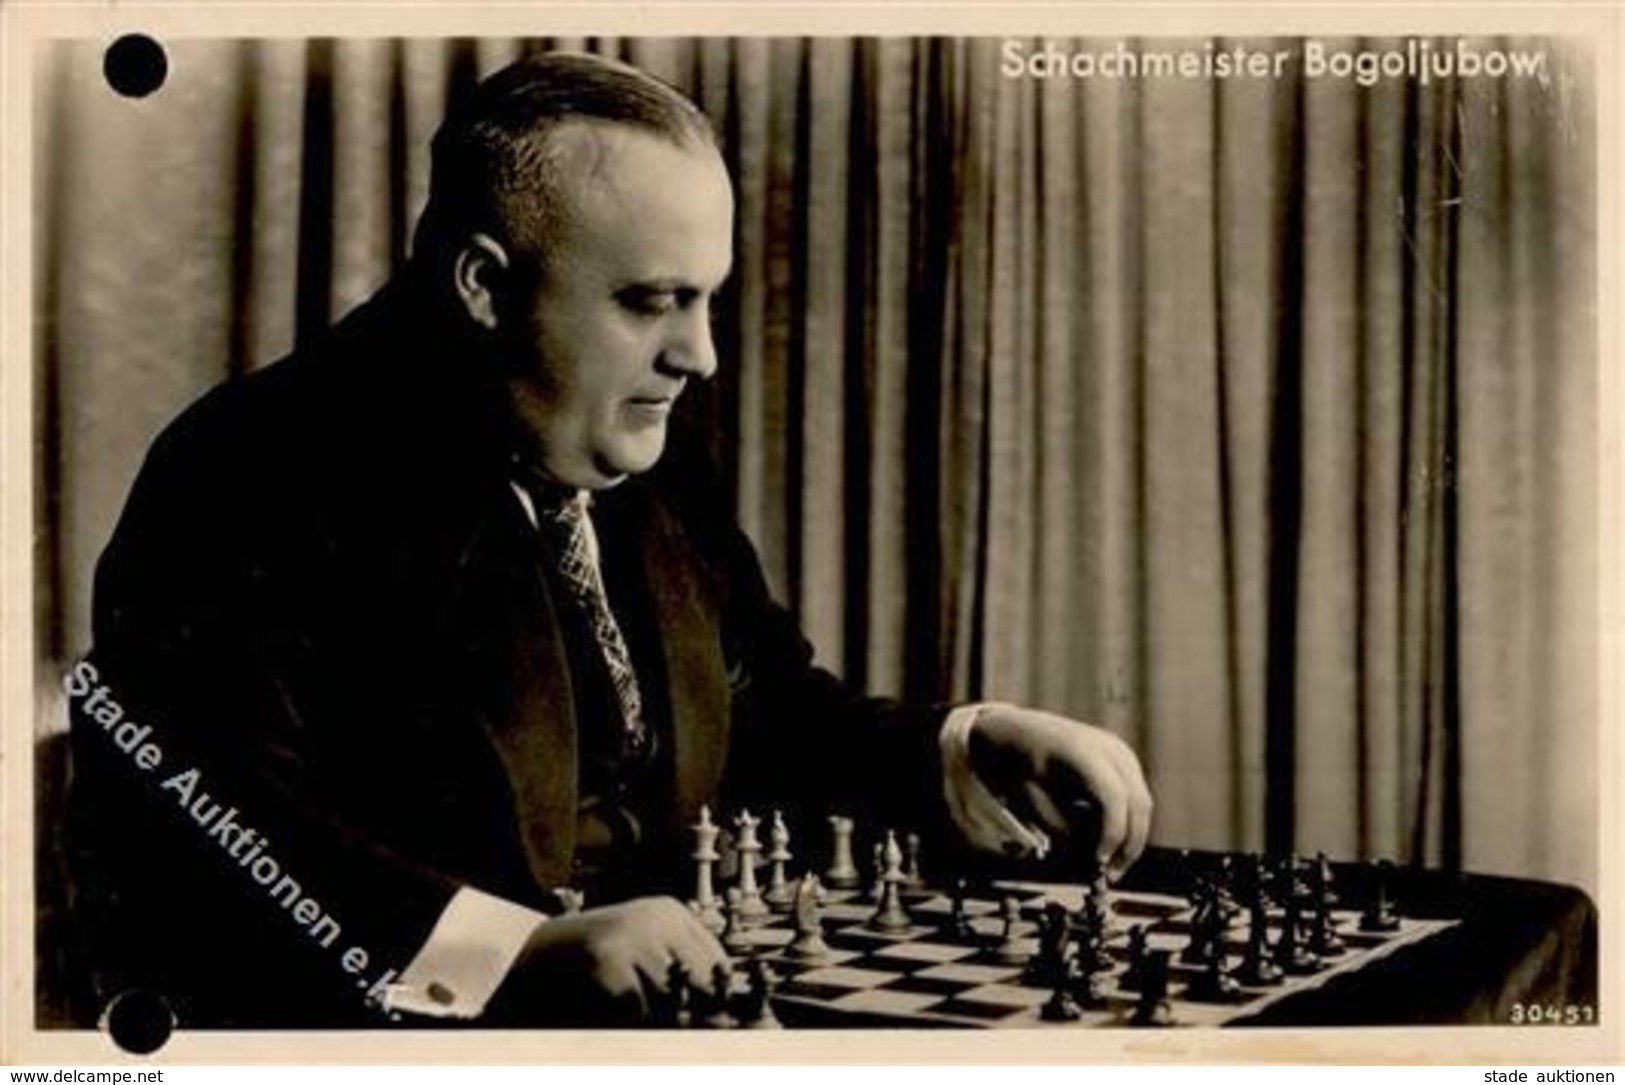 Schach Bogoljubow Schachmeiser Mit Original Unterschrift  Foto AK I-II (Aktenlochung Repariert) - Chess